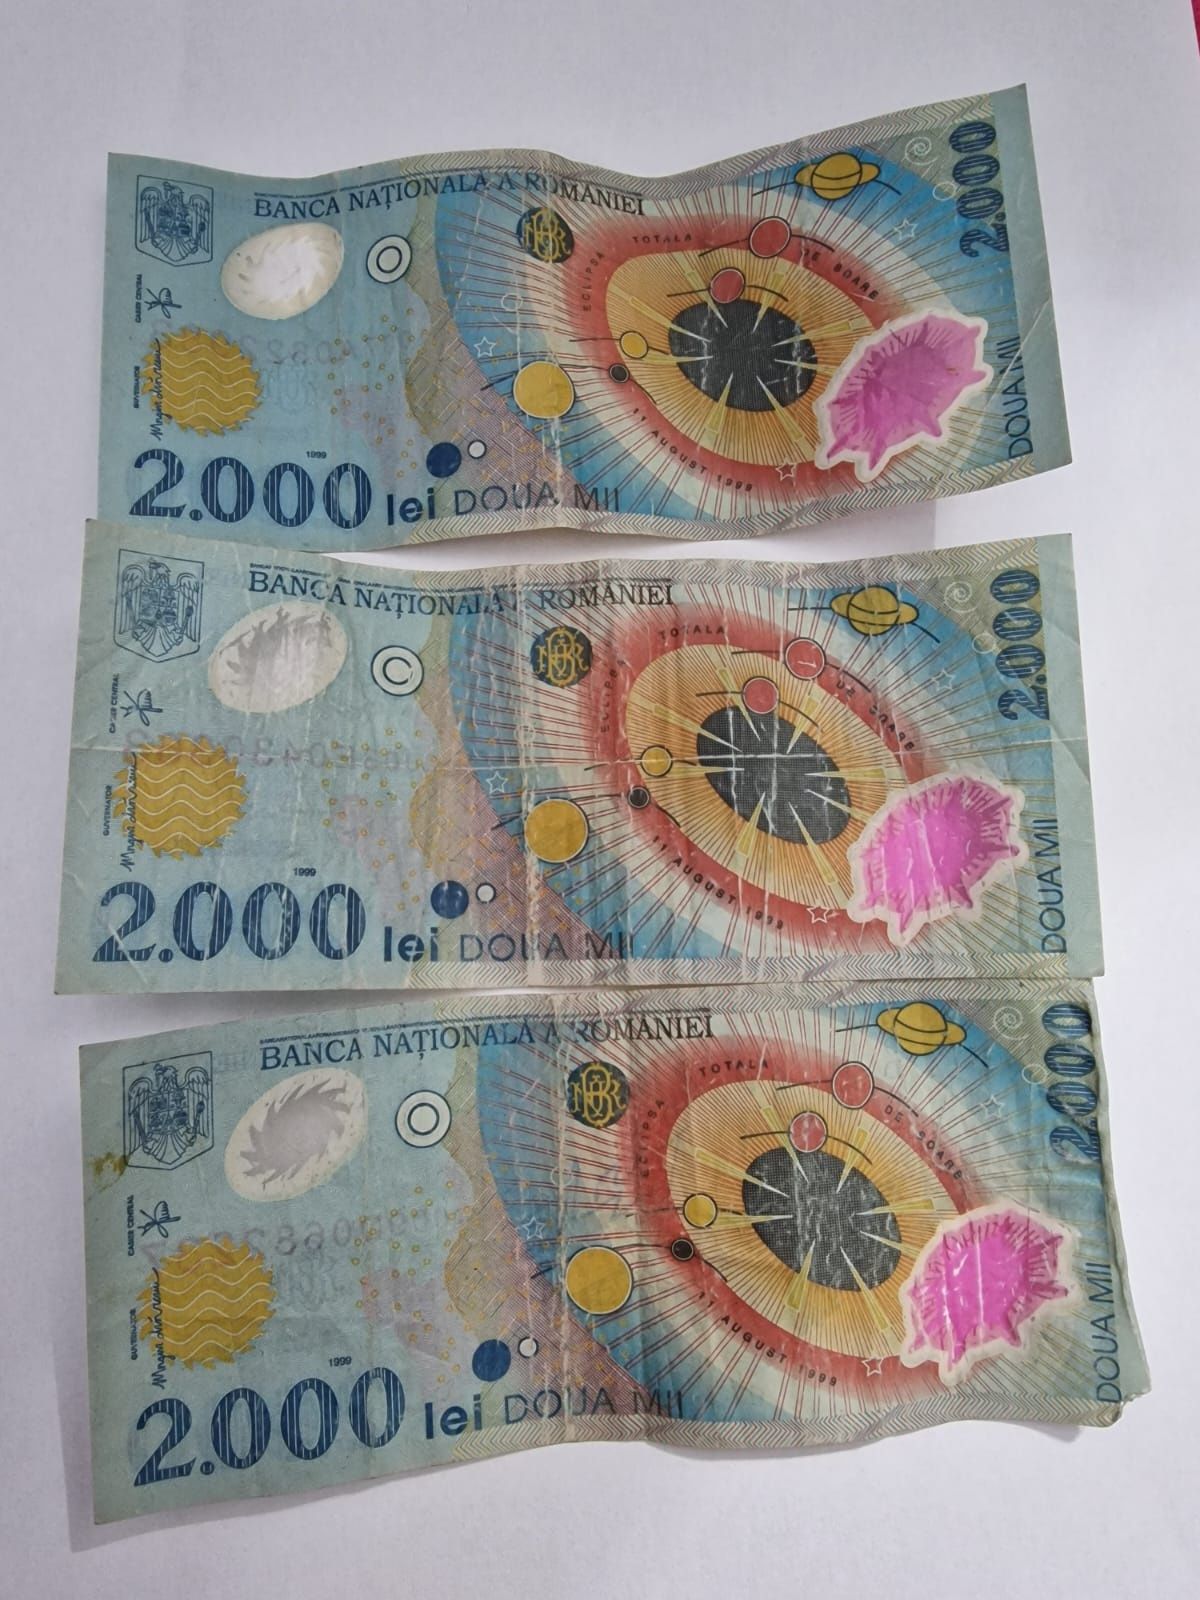 Vând 3 bancnote de 2000 lei cu eclipsă solară, ediție limitată.